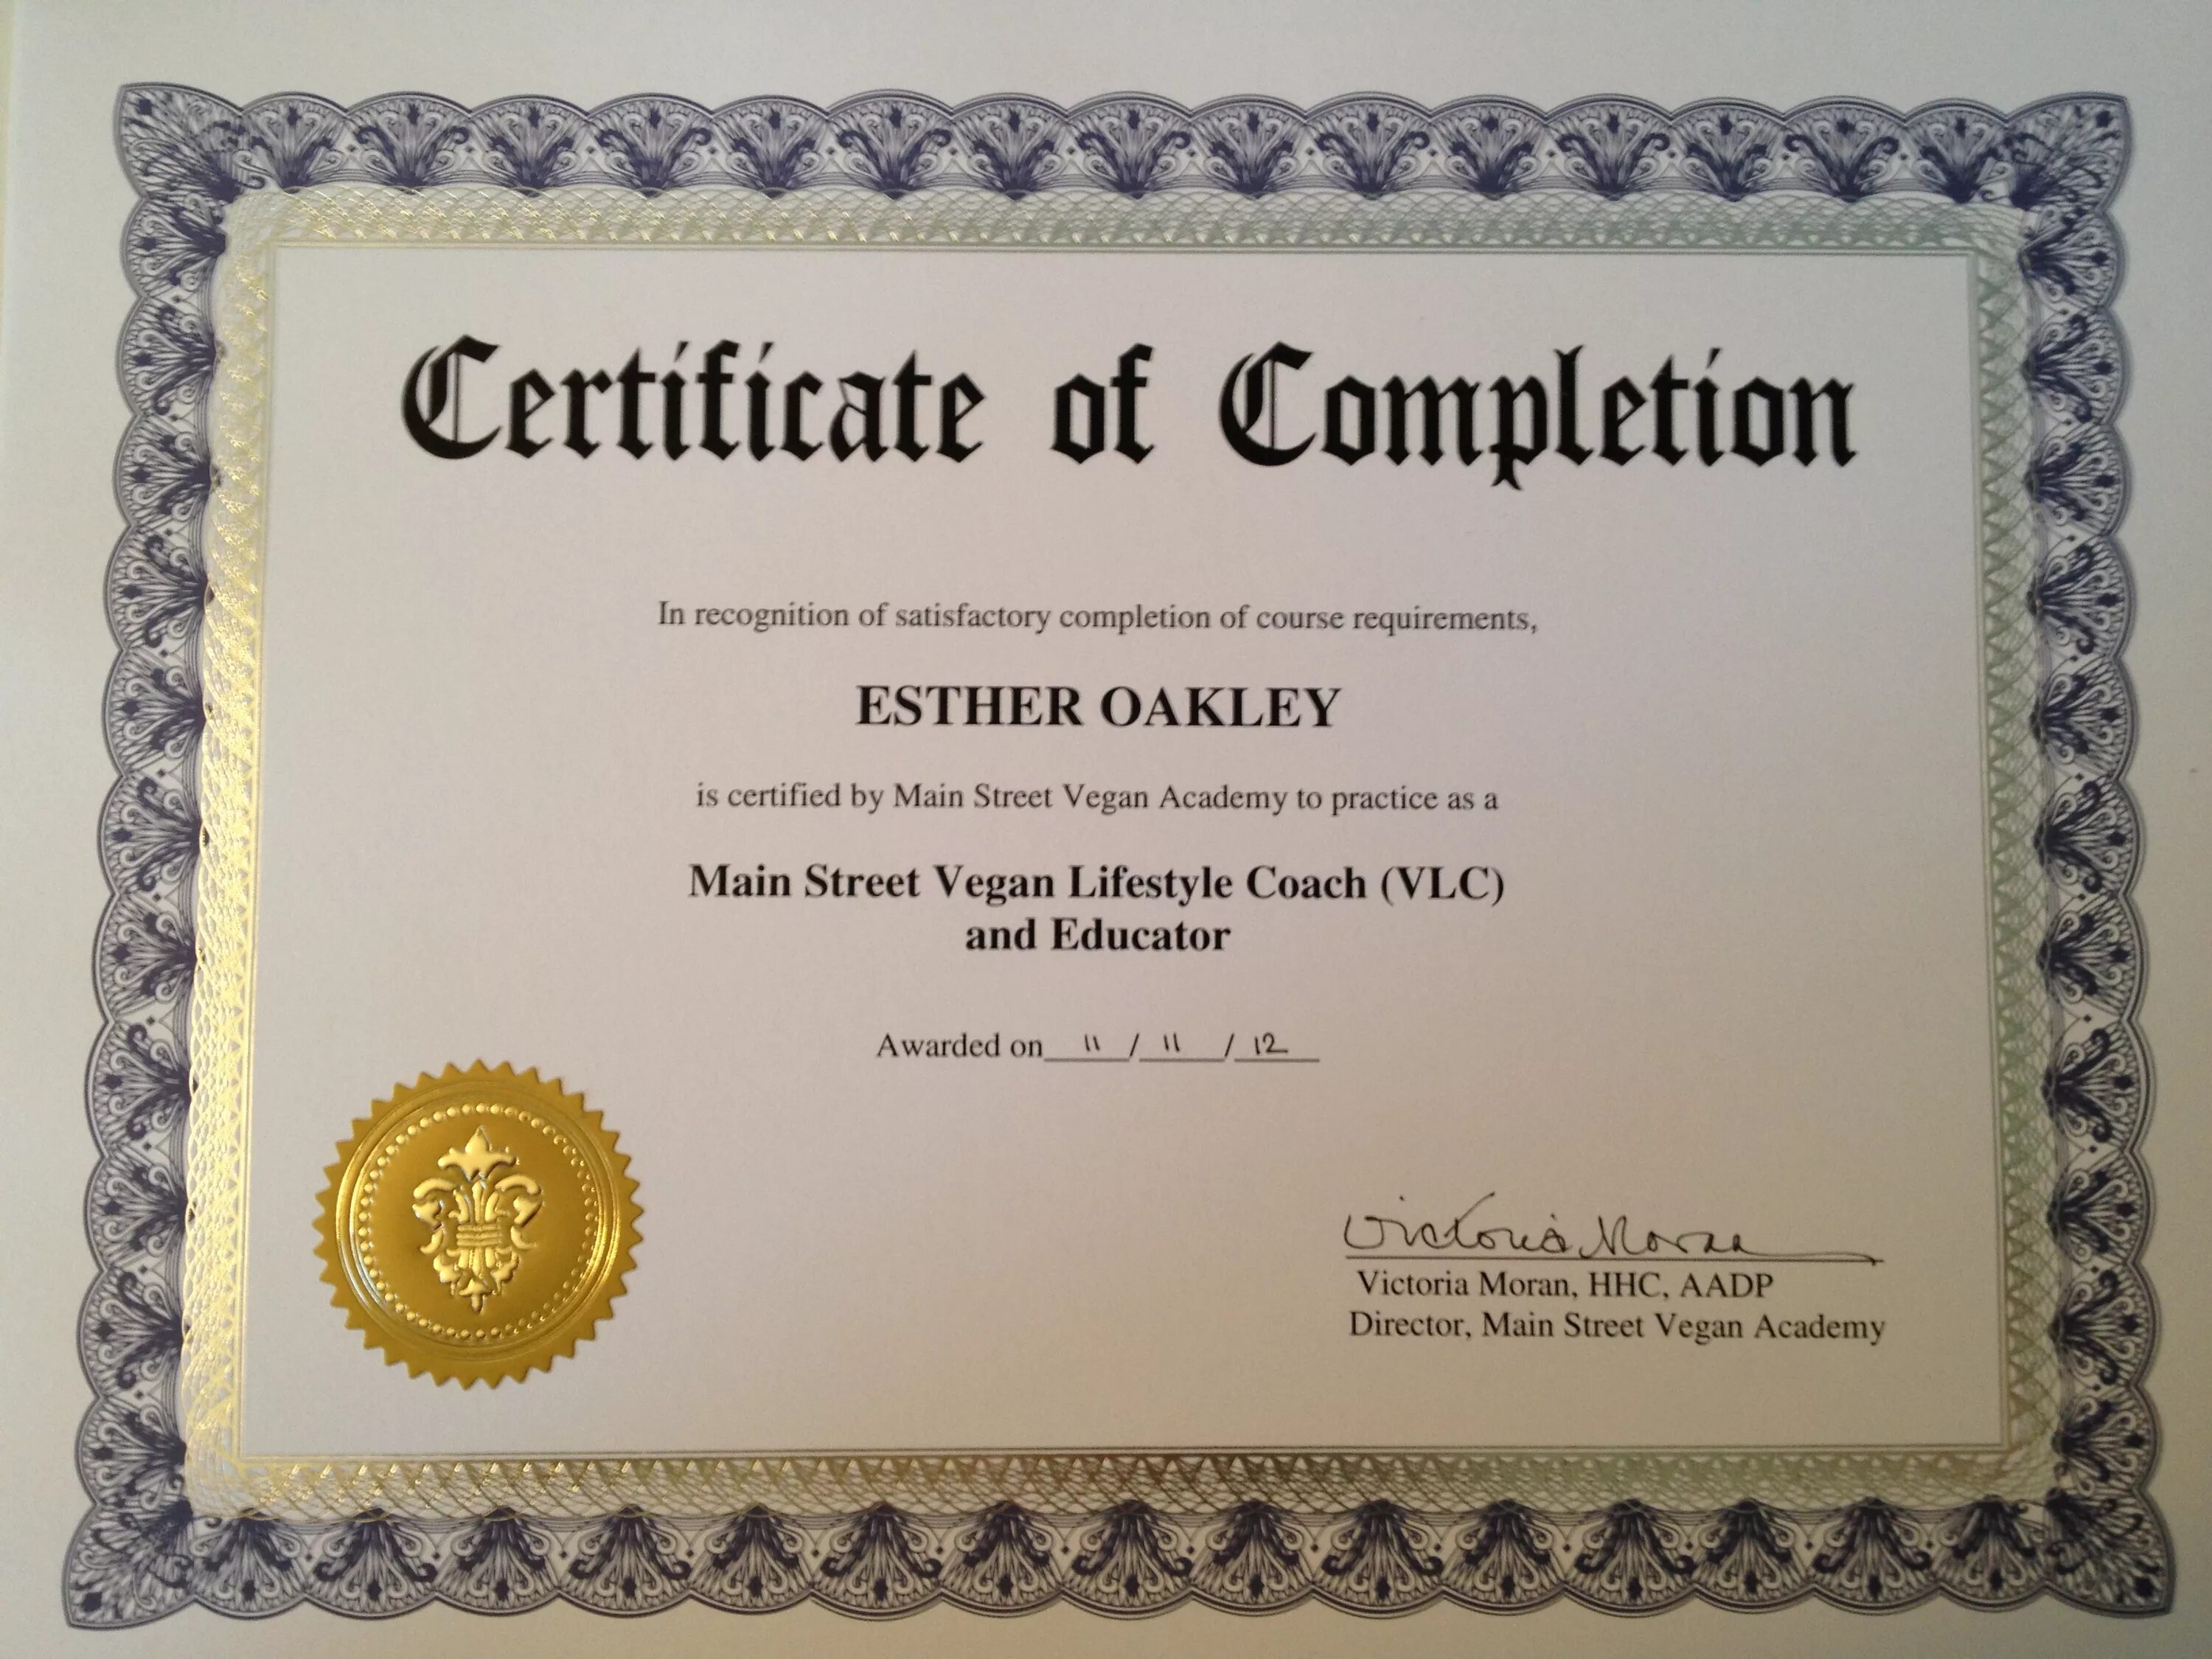 Peer certificate. Сертификат юдеми. Сертификат от Udemy. Сертификат CAE. Udemy сертификат об окончании.